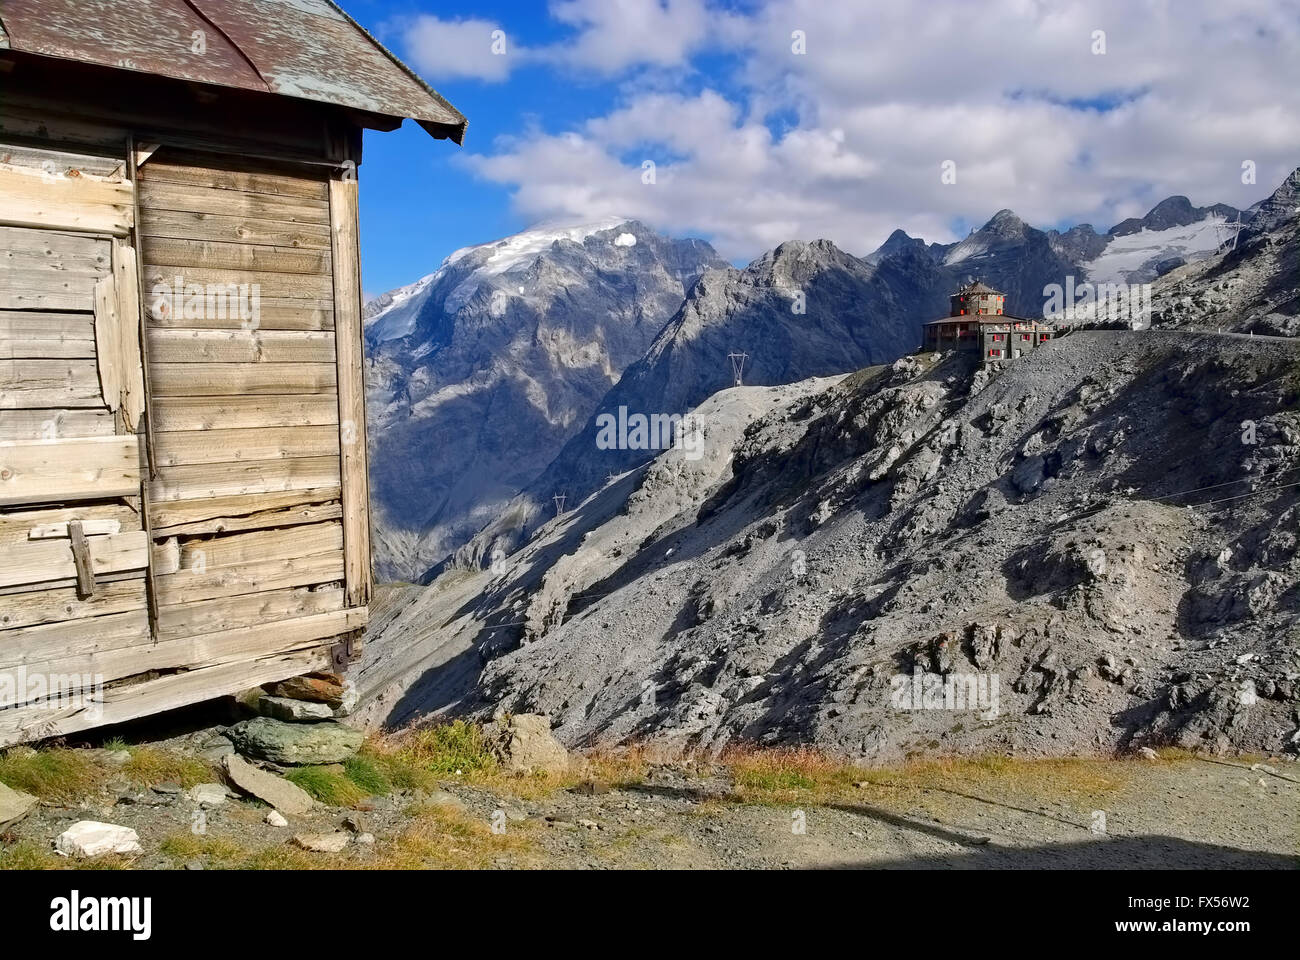 Stilfser Joch Tibet-Hütte in Südtirol - Passo dello Stelvio, il Tibet-Hut in Alto Adige Foto Stock